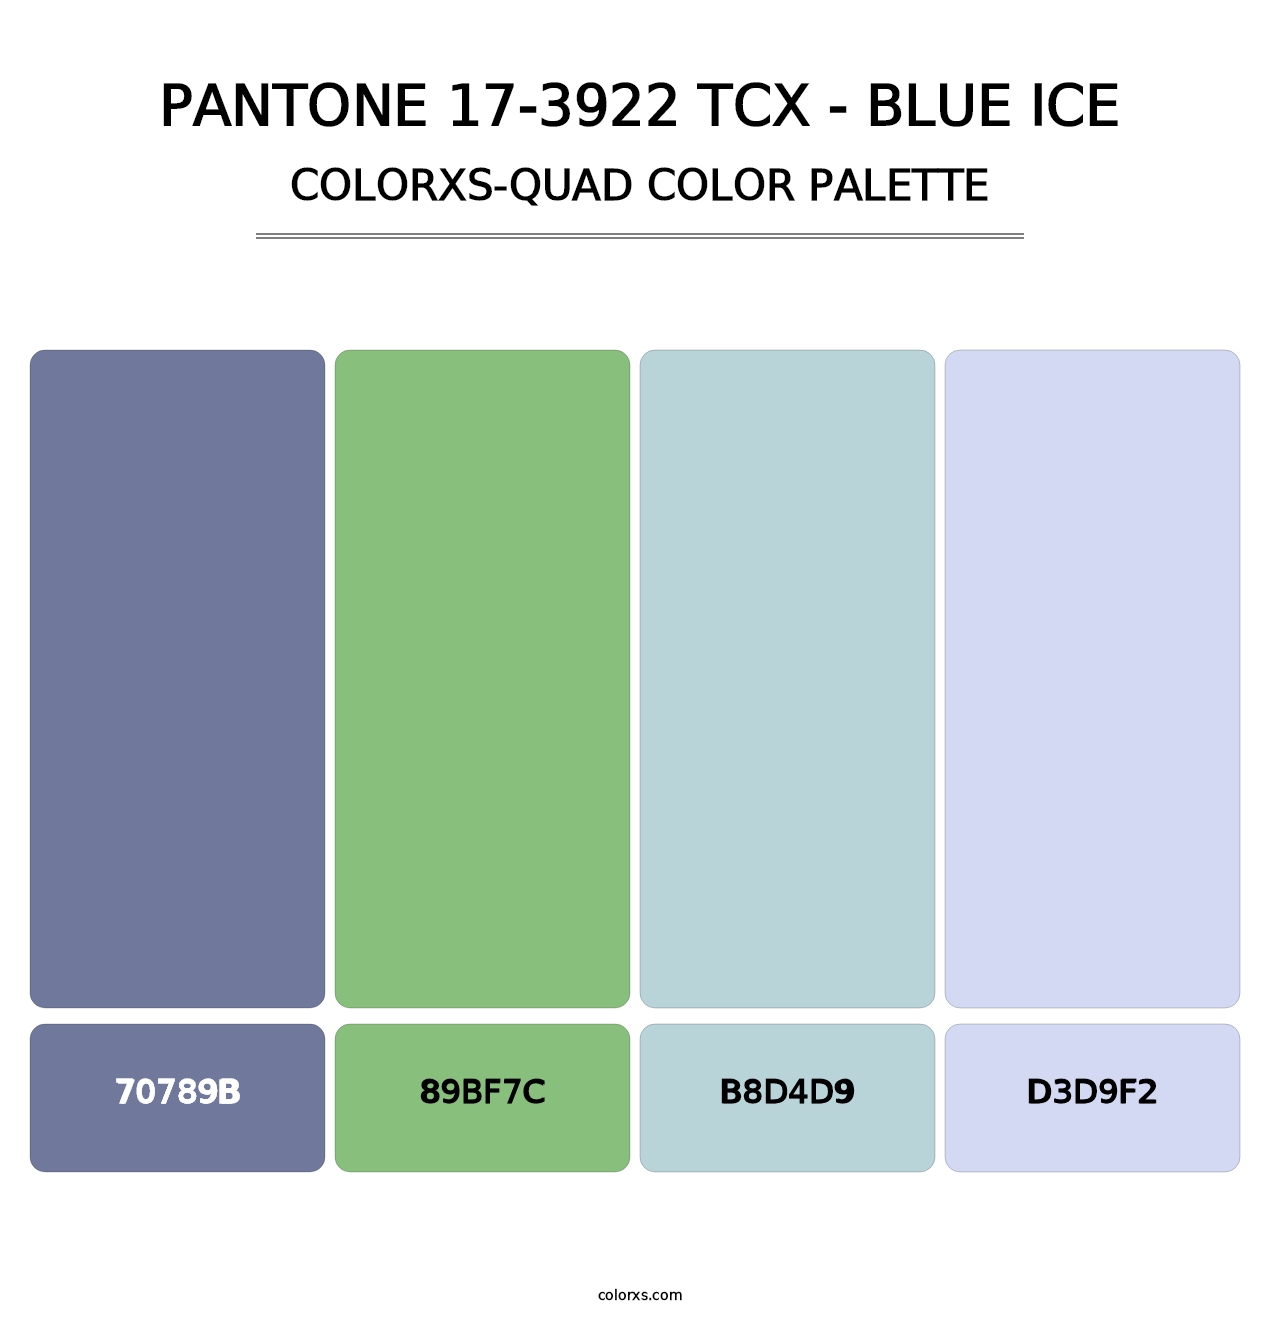 PANTONE 17-3922 TCX - Blue Ice - Colorxs Quad Palette